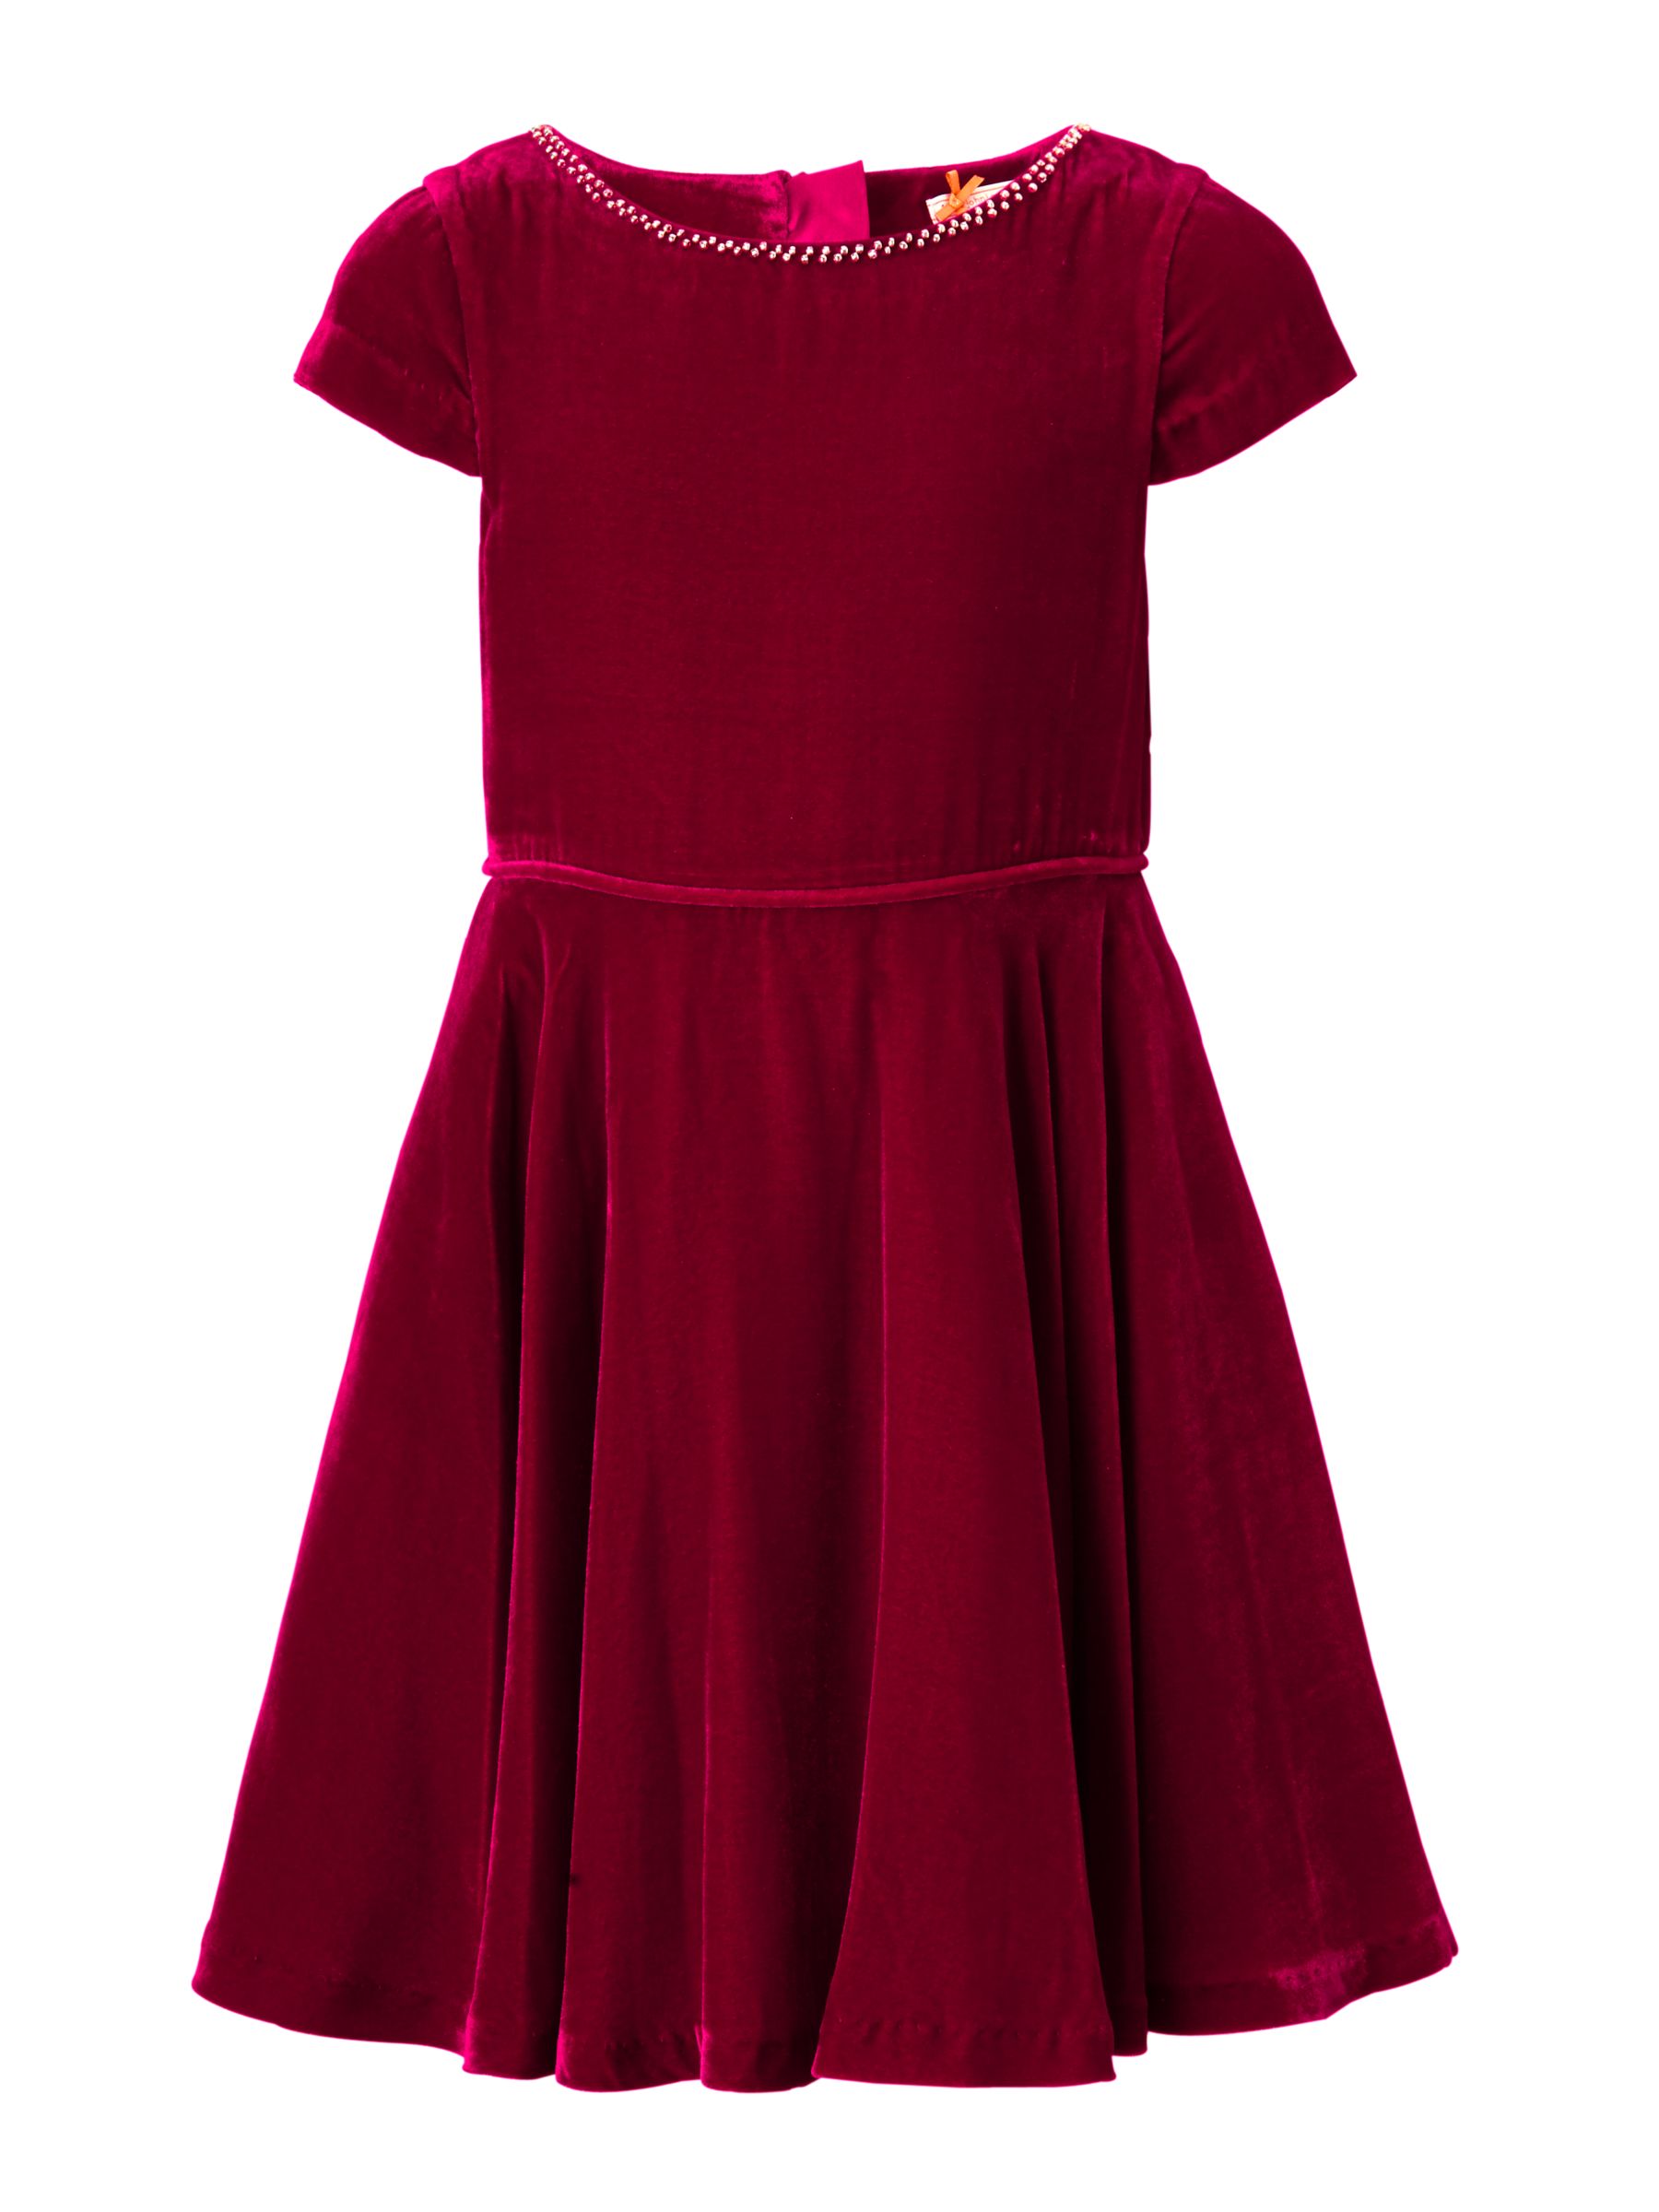 John Lewis Heirloom Collection Girls' Velvet Dress, Red